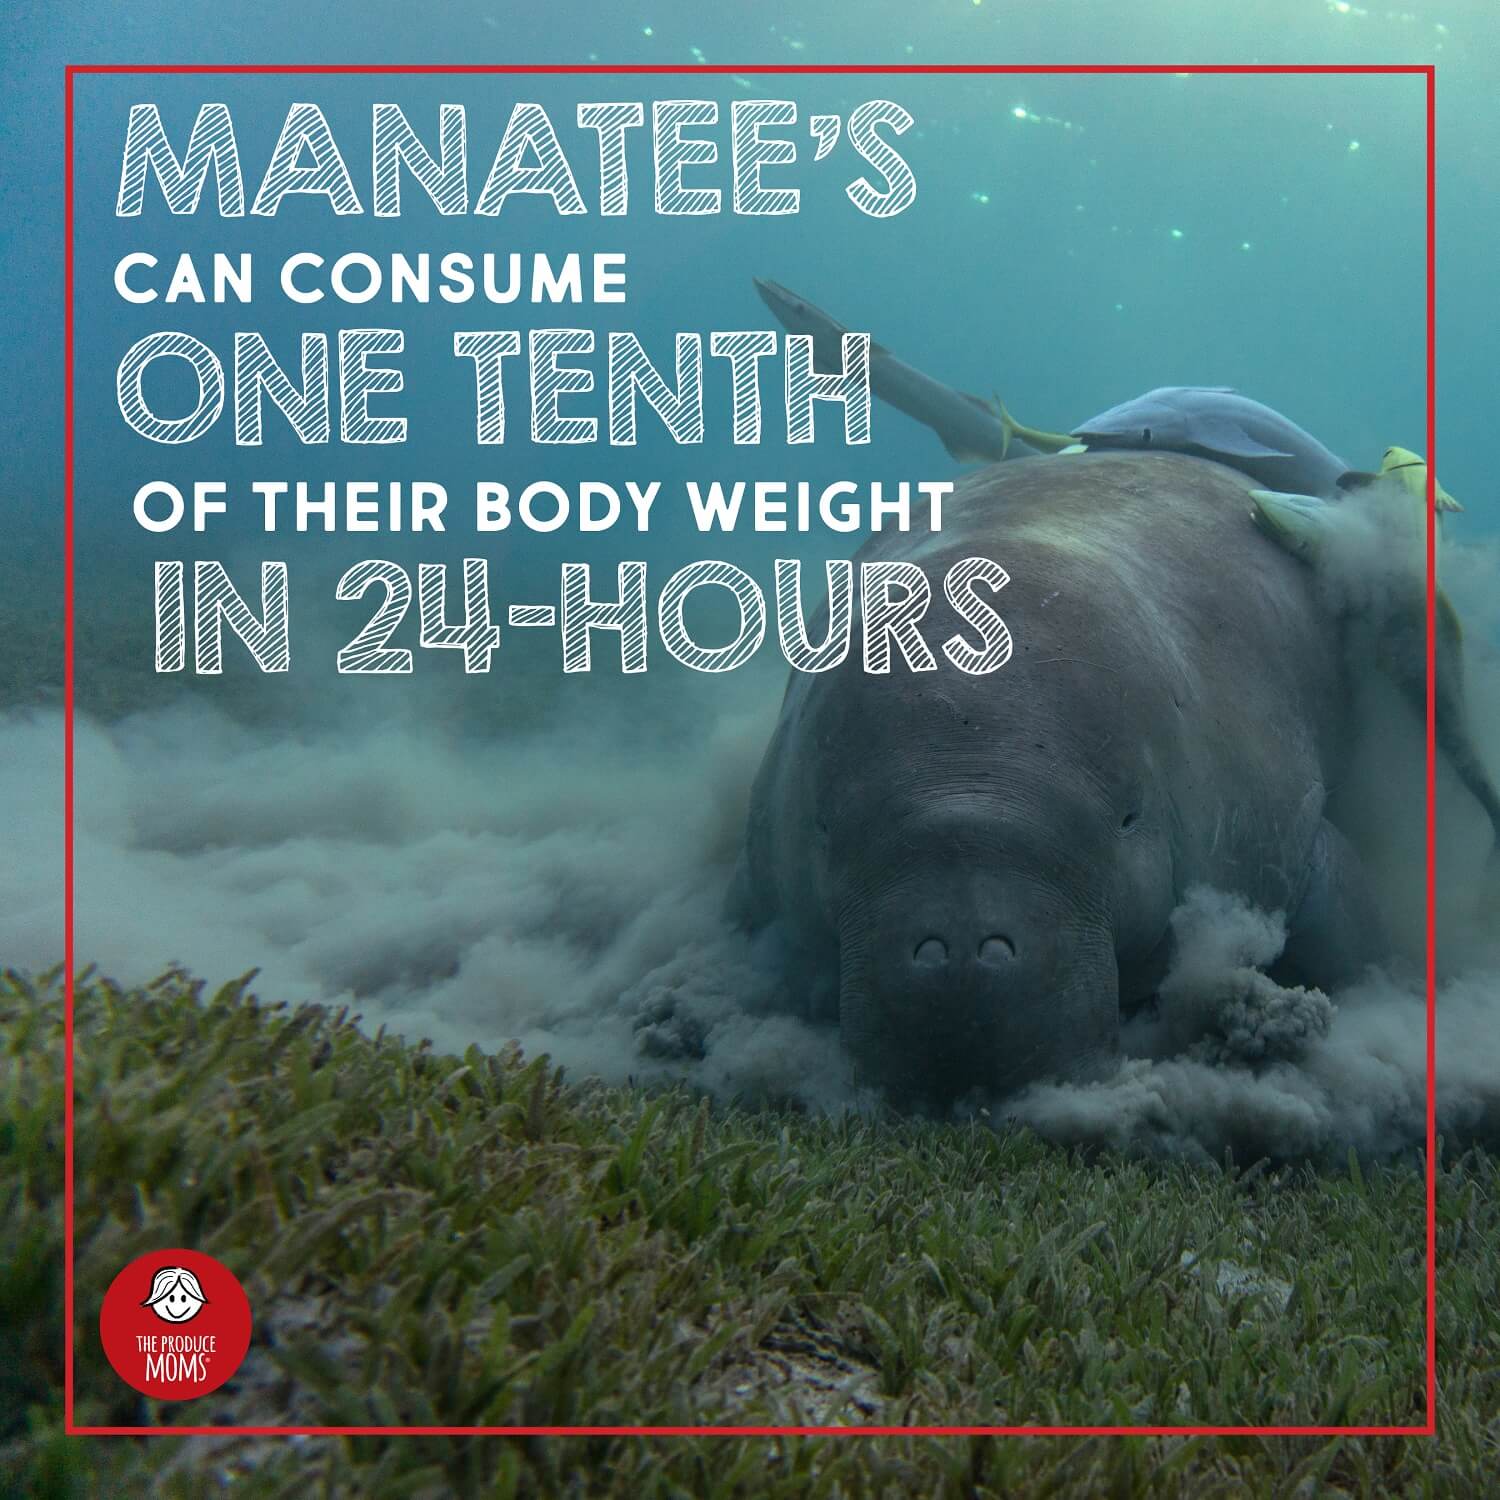 You'd have to eat a lot of grass to eat like a manatee!